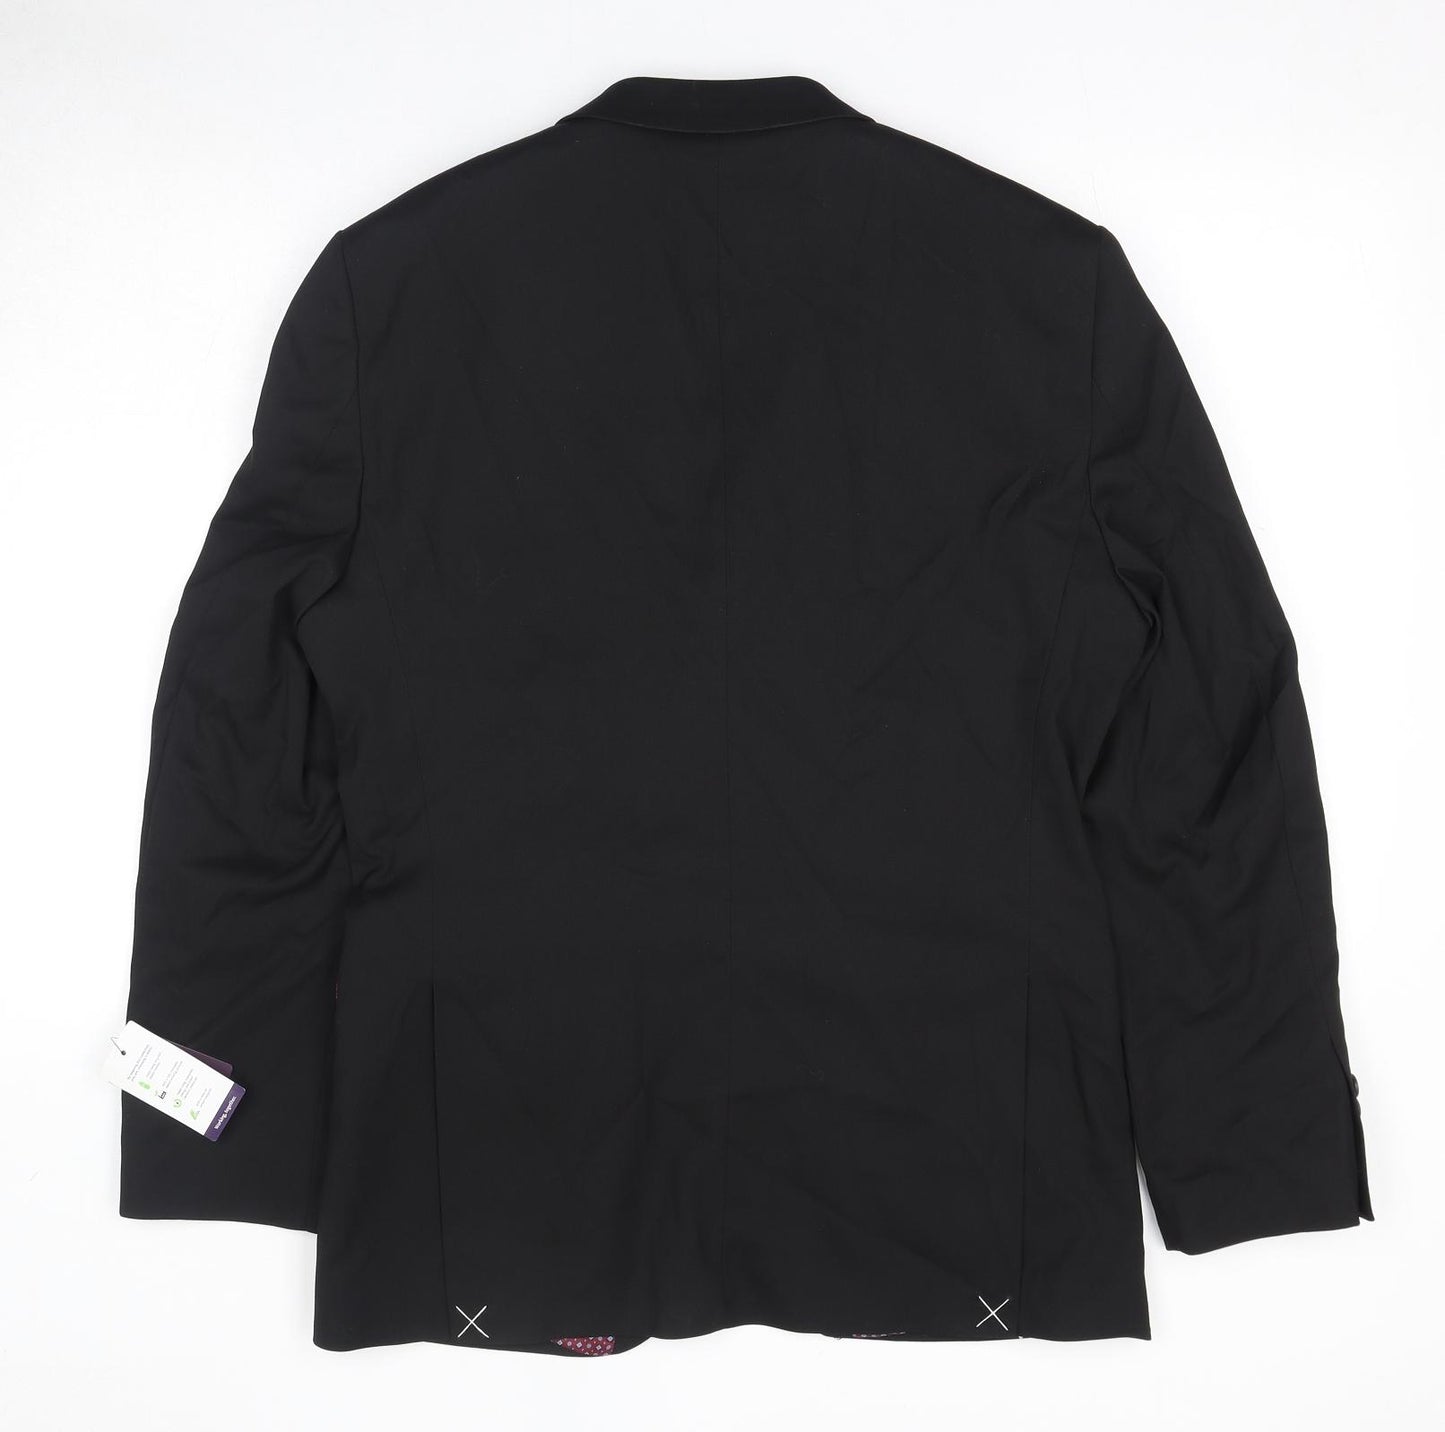 Brook Taverner Mens Black Polyester Jacket Suit Jacket Size 38 Regular